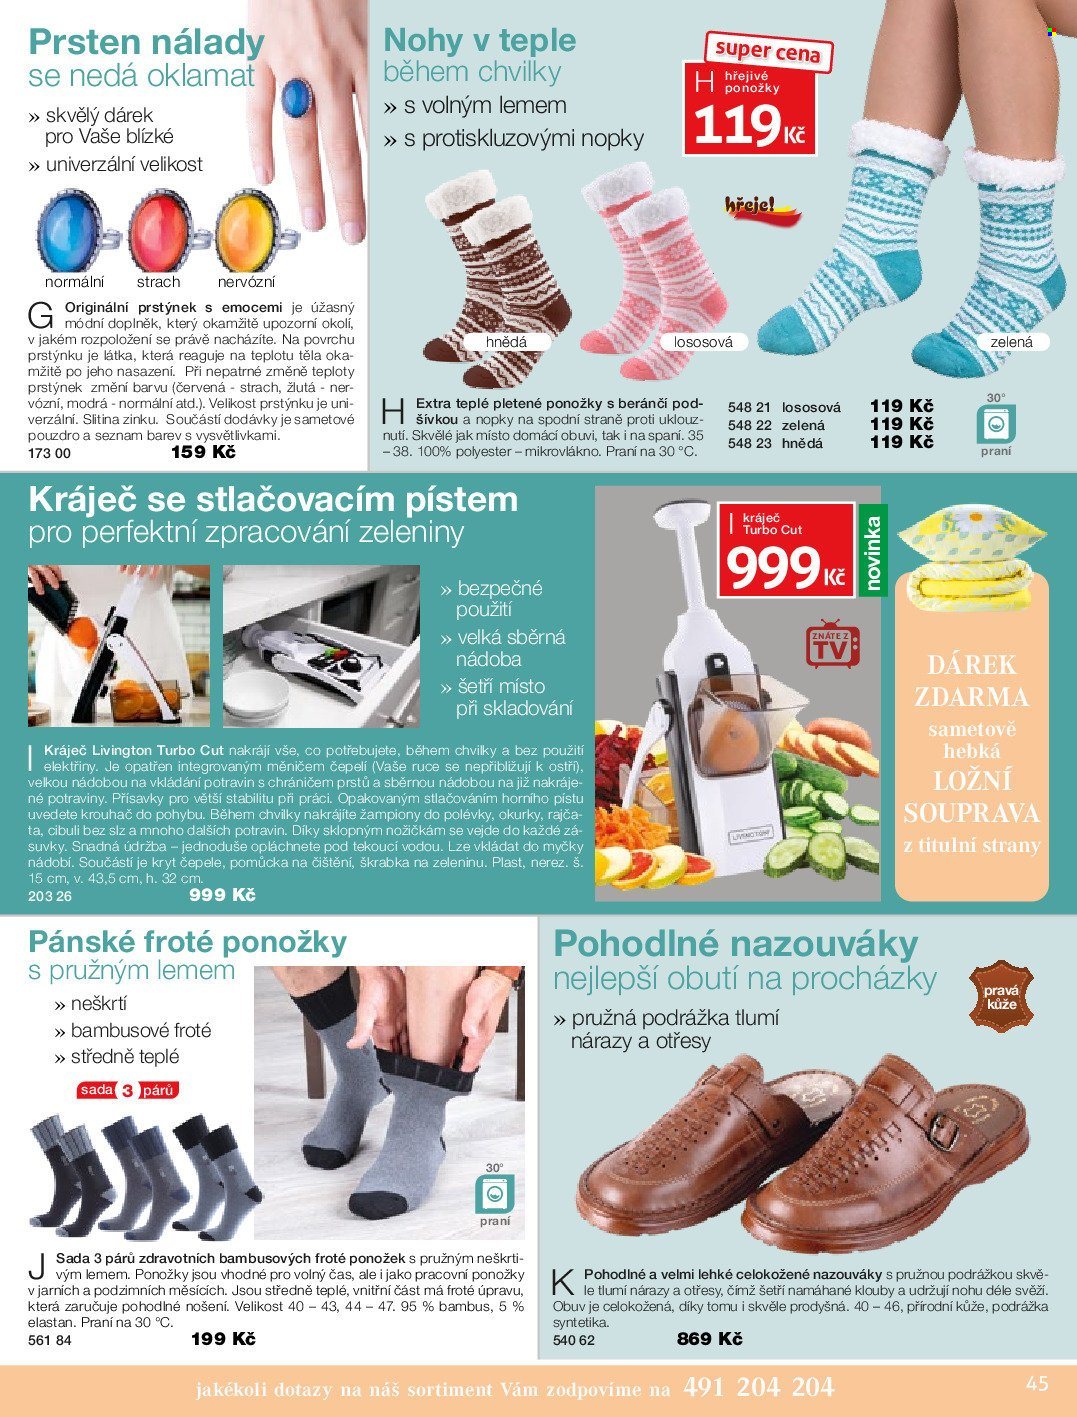 thumbnail - Leták decoDoma - Produkty v akci - Livington, kráječ, škrabka na zeleninu, krouhač, penál, ložní souprava, pracovní oblečení, boty, dámská obuv, ponožky, prsten. Strana 45.